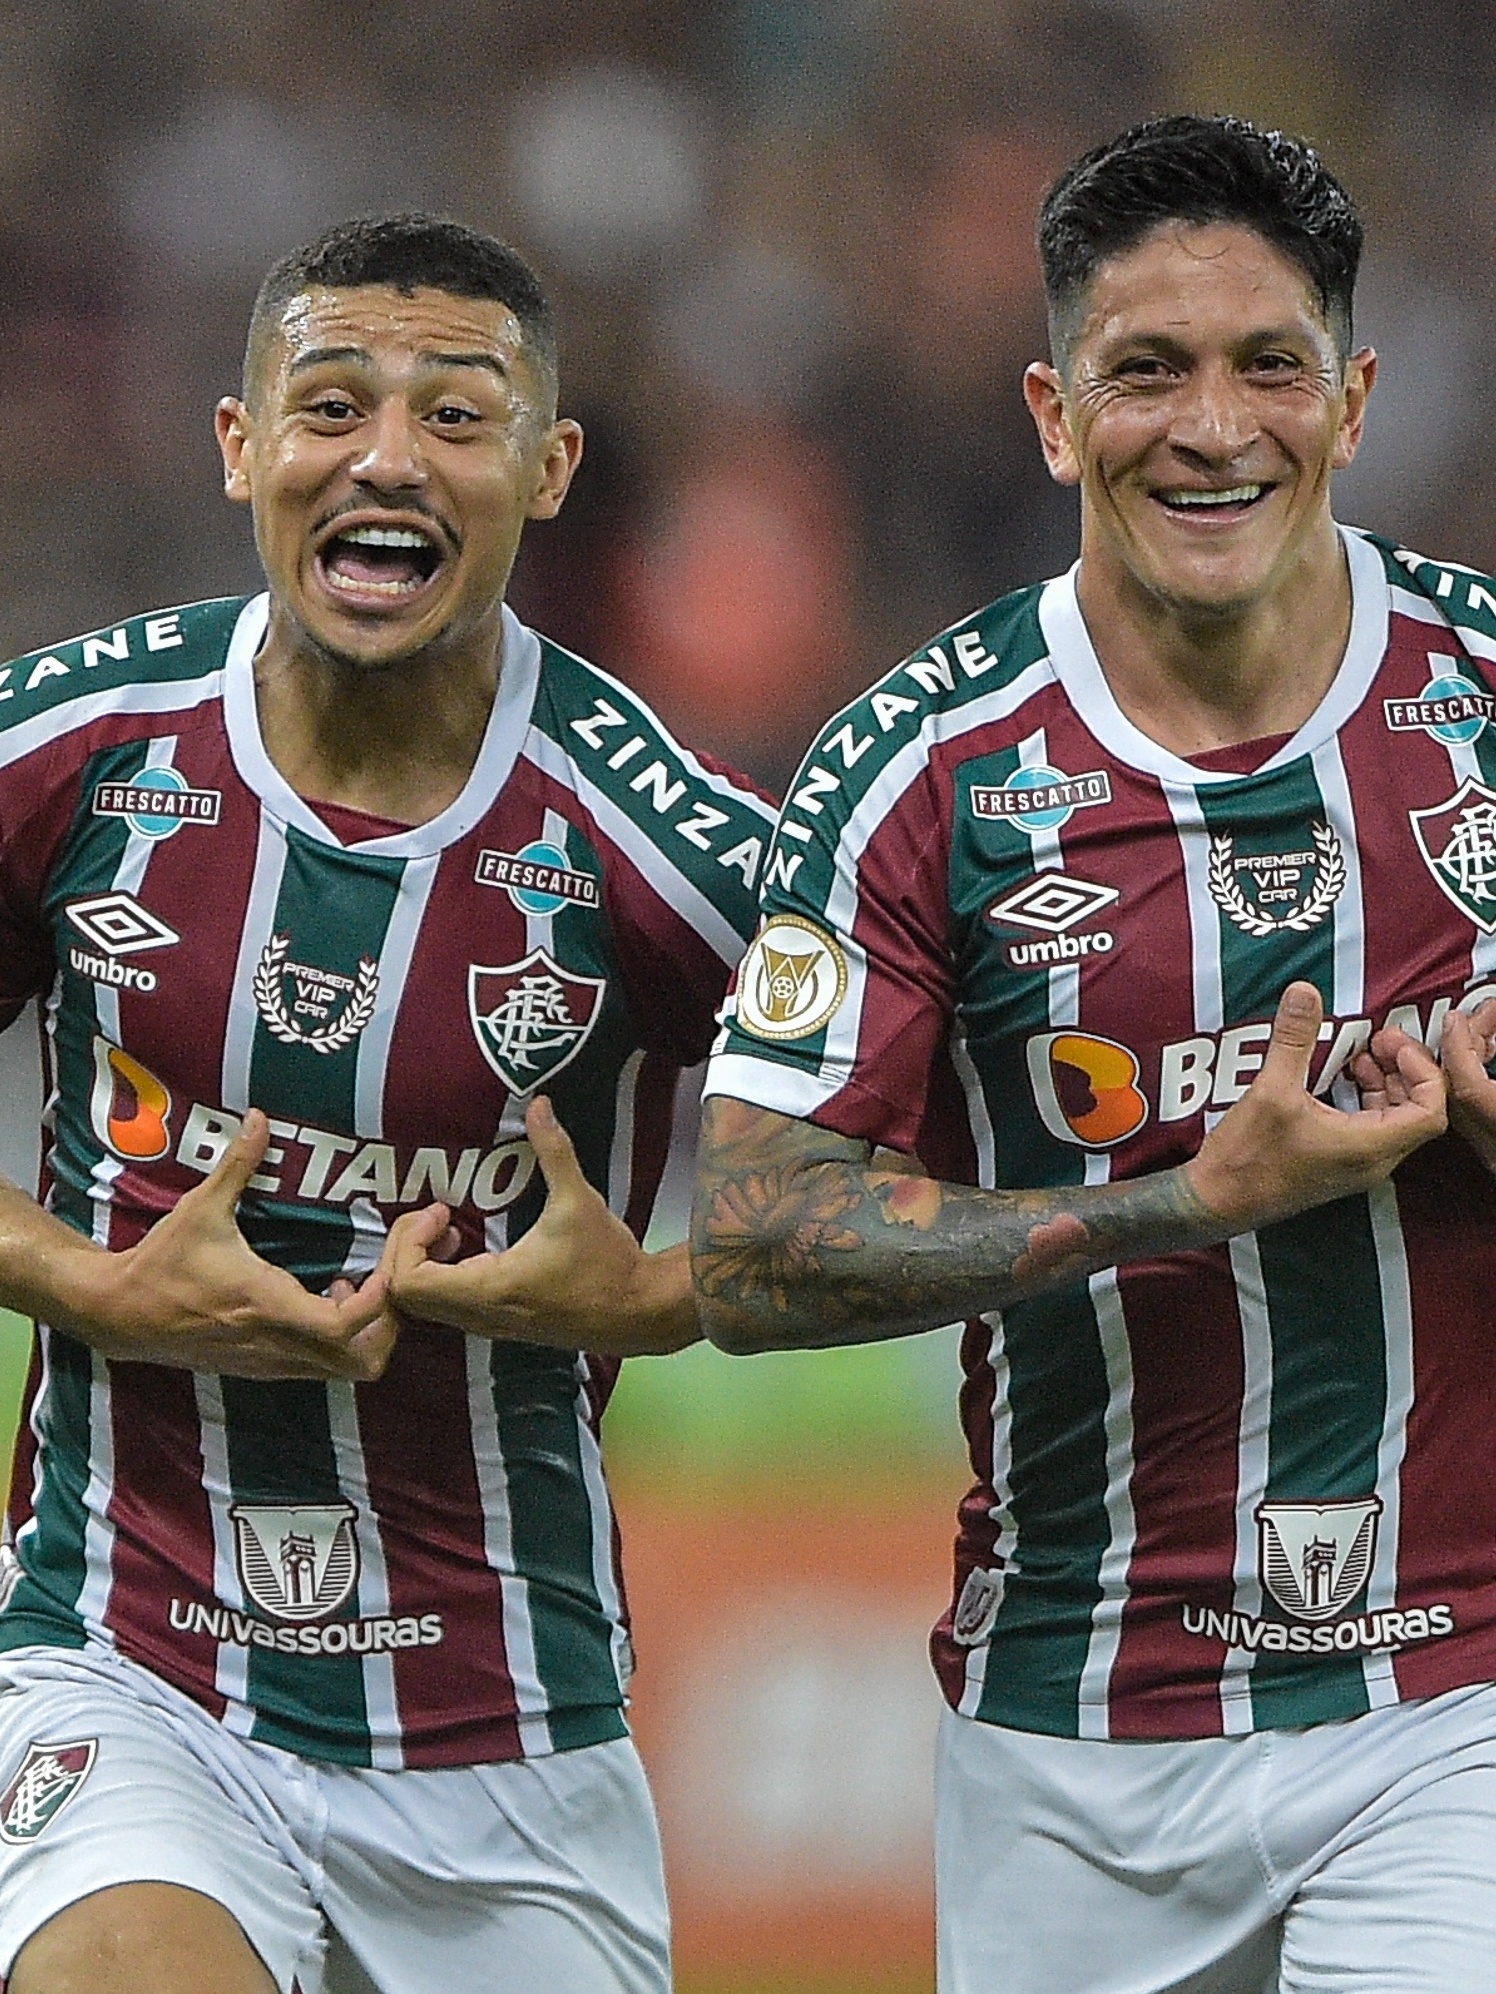 Atuações do Fluminense: Cano leva nota 10 em jogo espetacular da equipe, fluminense